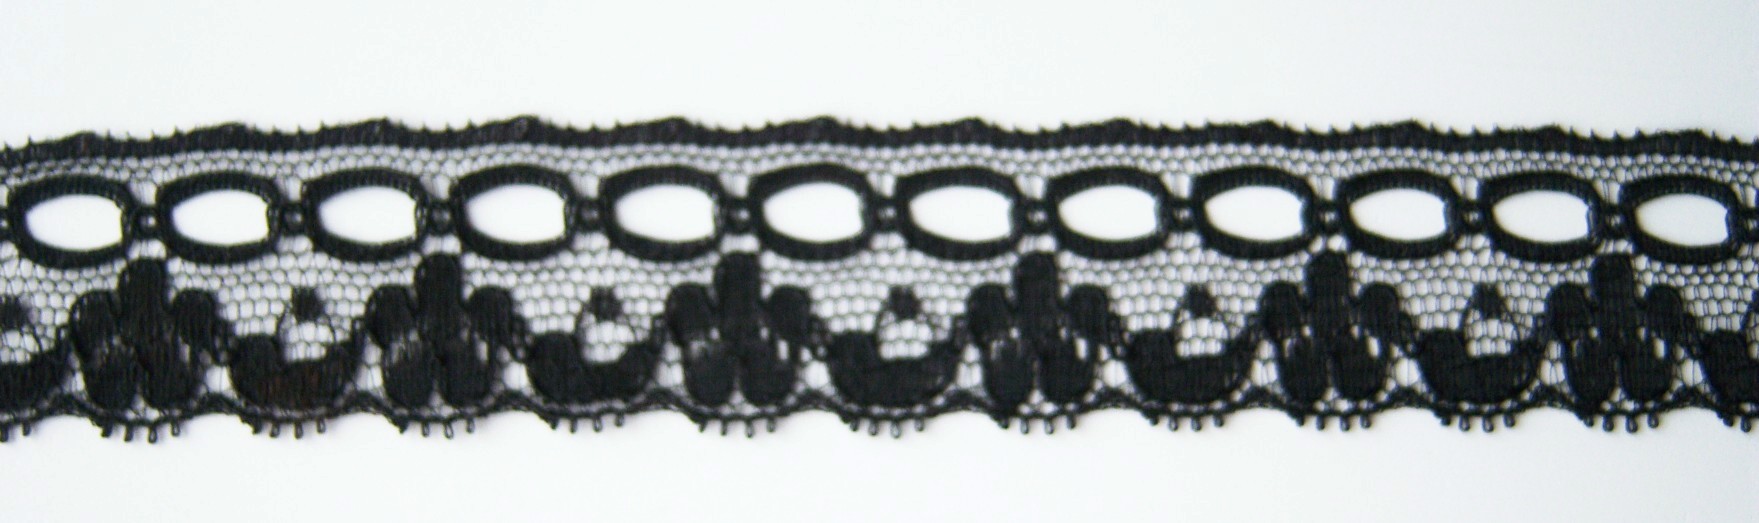 Black 1" Nylon Lace